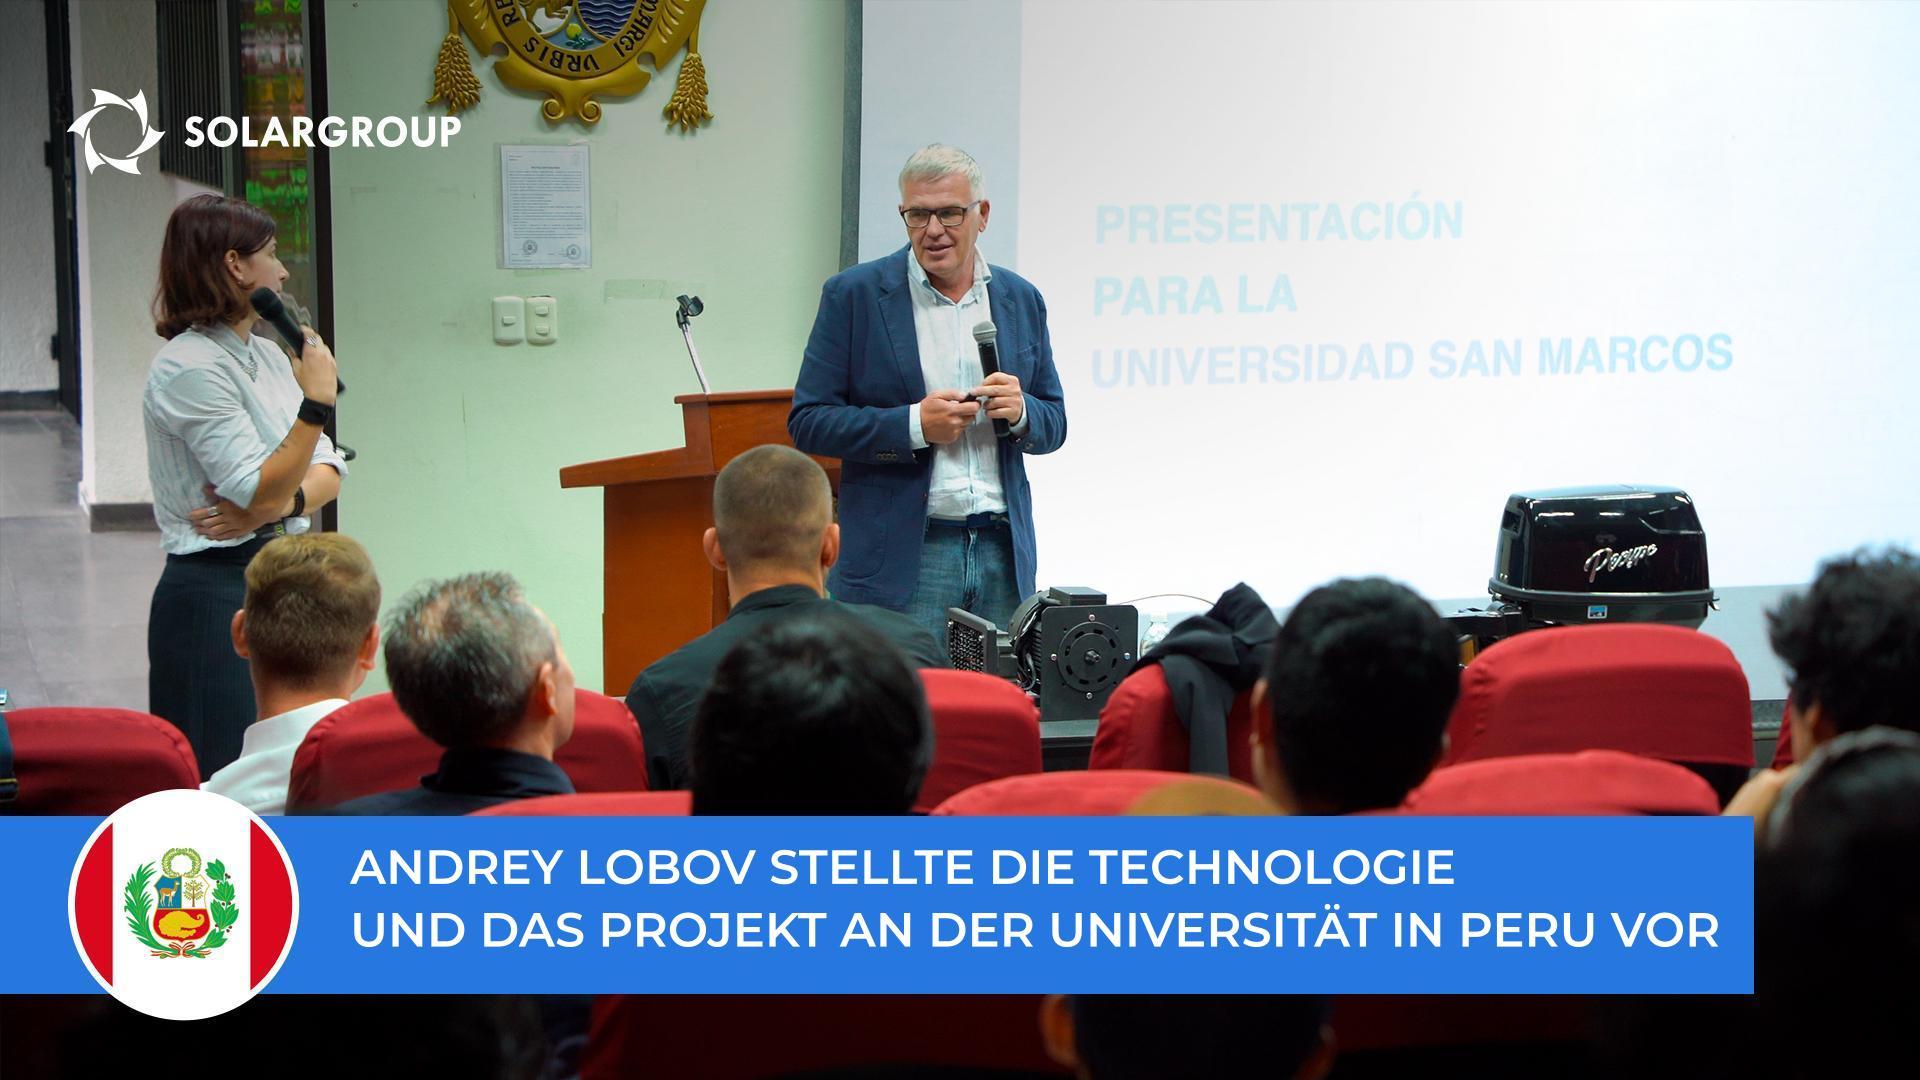 Andrey Lobov stellte die Technologie und das Projekt Studenten und Lehrkräften der Universität San Marcos vor